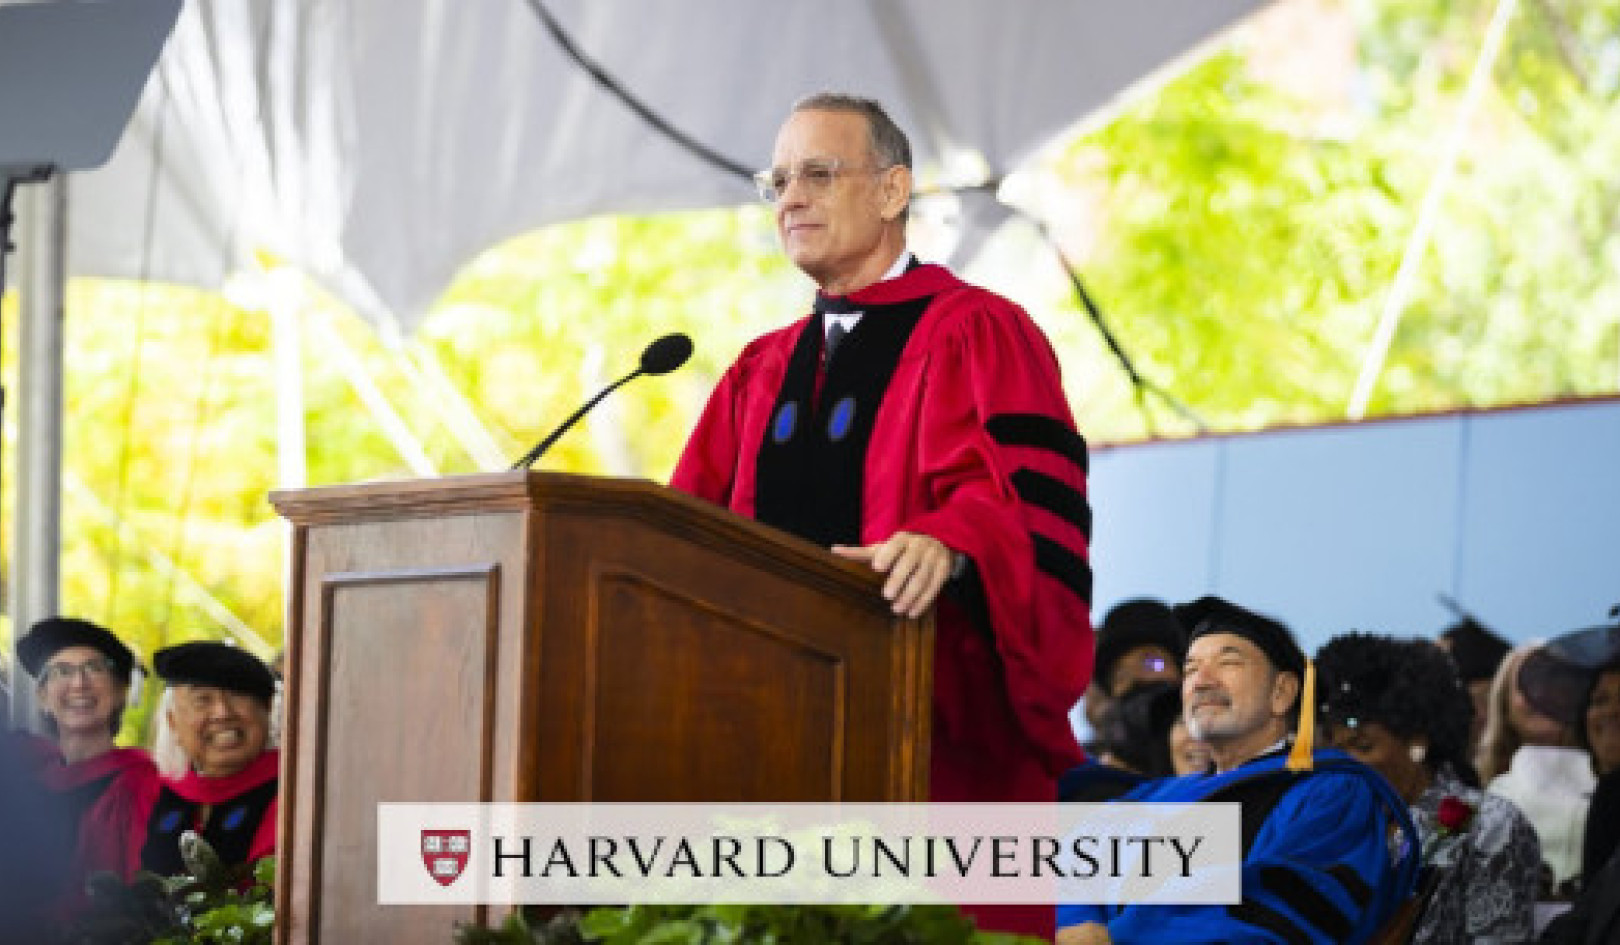 Tom Hanks inspire les diplômés de Harvard à adopter la vérité, la justice et l'American Way